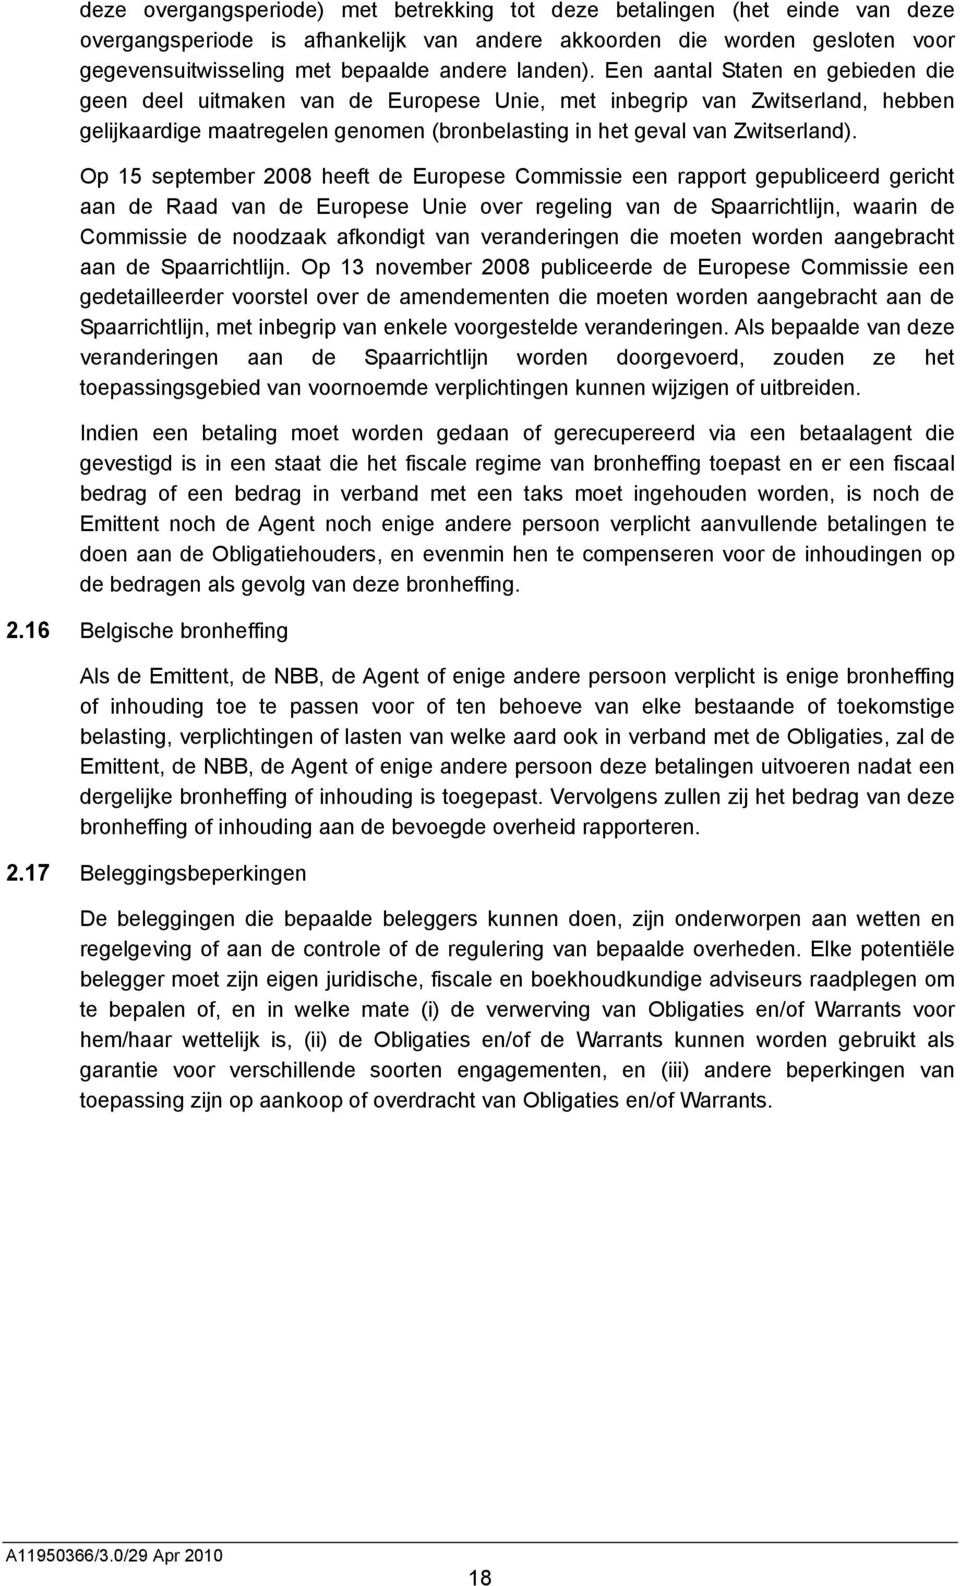 Op 15 september 2008 heeft de Europese Commissie een rapport gepubliceerd gericht aan de Raad van de Europese Unie over regeling van de Spaarrichtlijn, waarin de Commissie de noodzaak afkondigt van